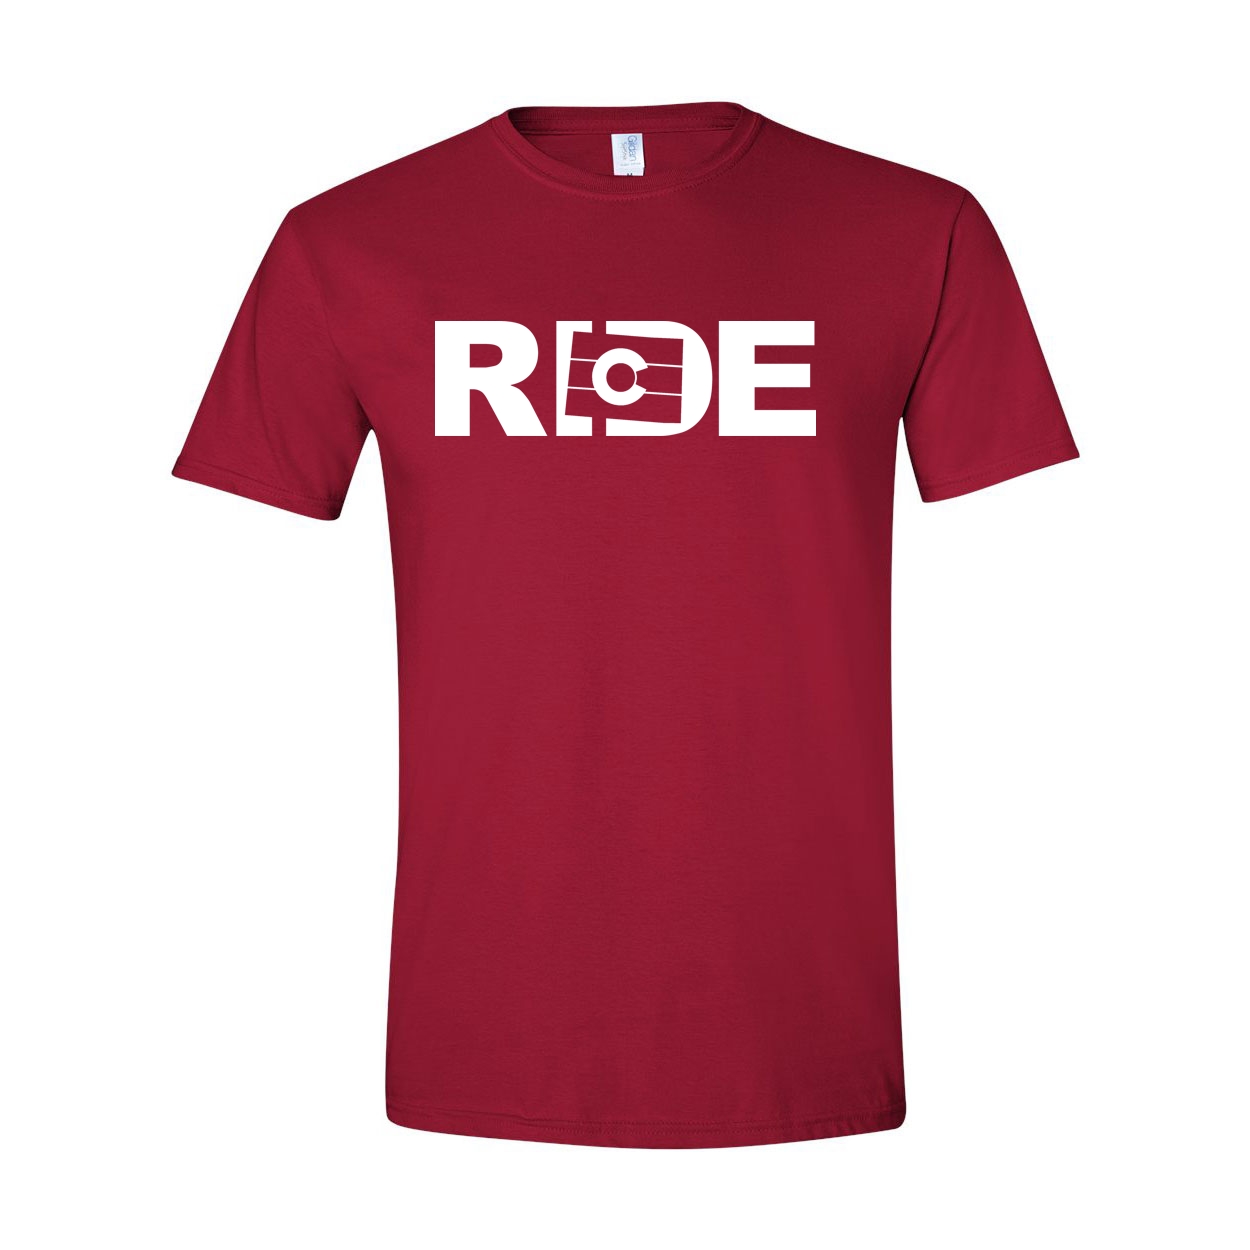 Ride Colorado Classic T-Shirt Cardinal Red (White Logo)